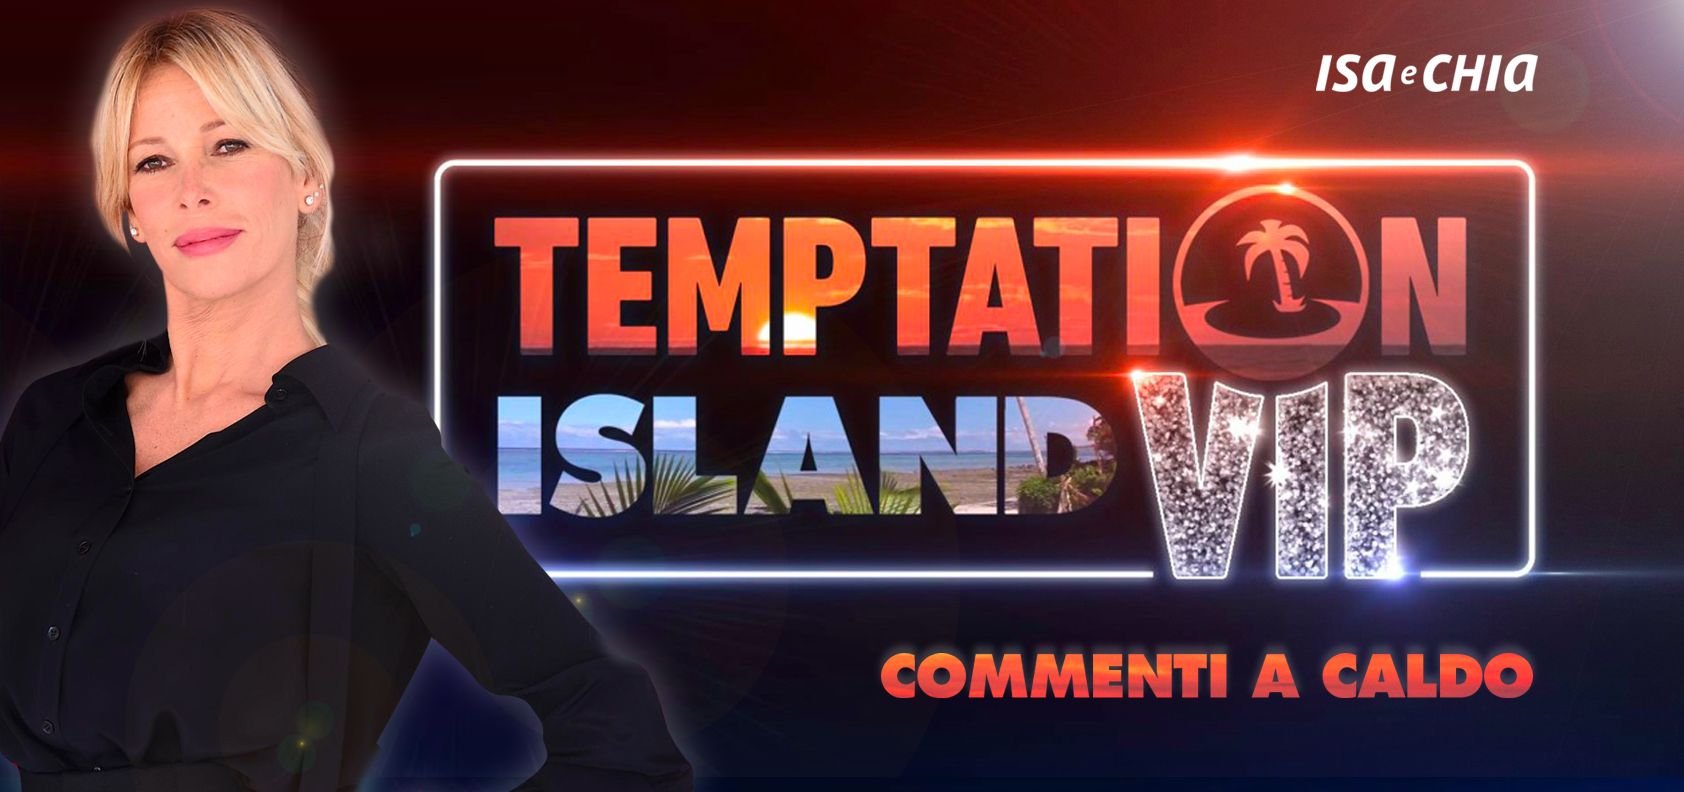 ‘Temptation Island Vip 2’, seconda puntata: commenti a caldo